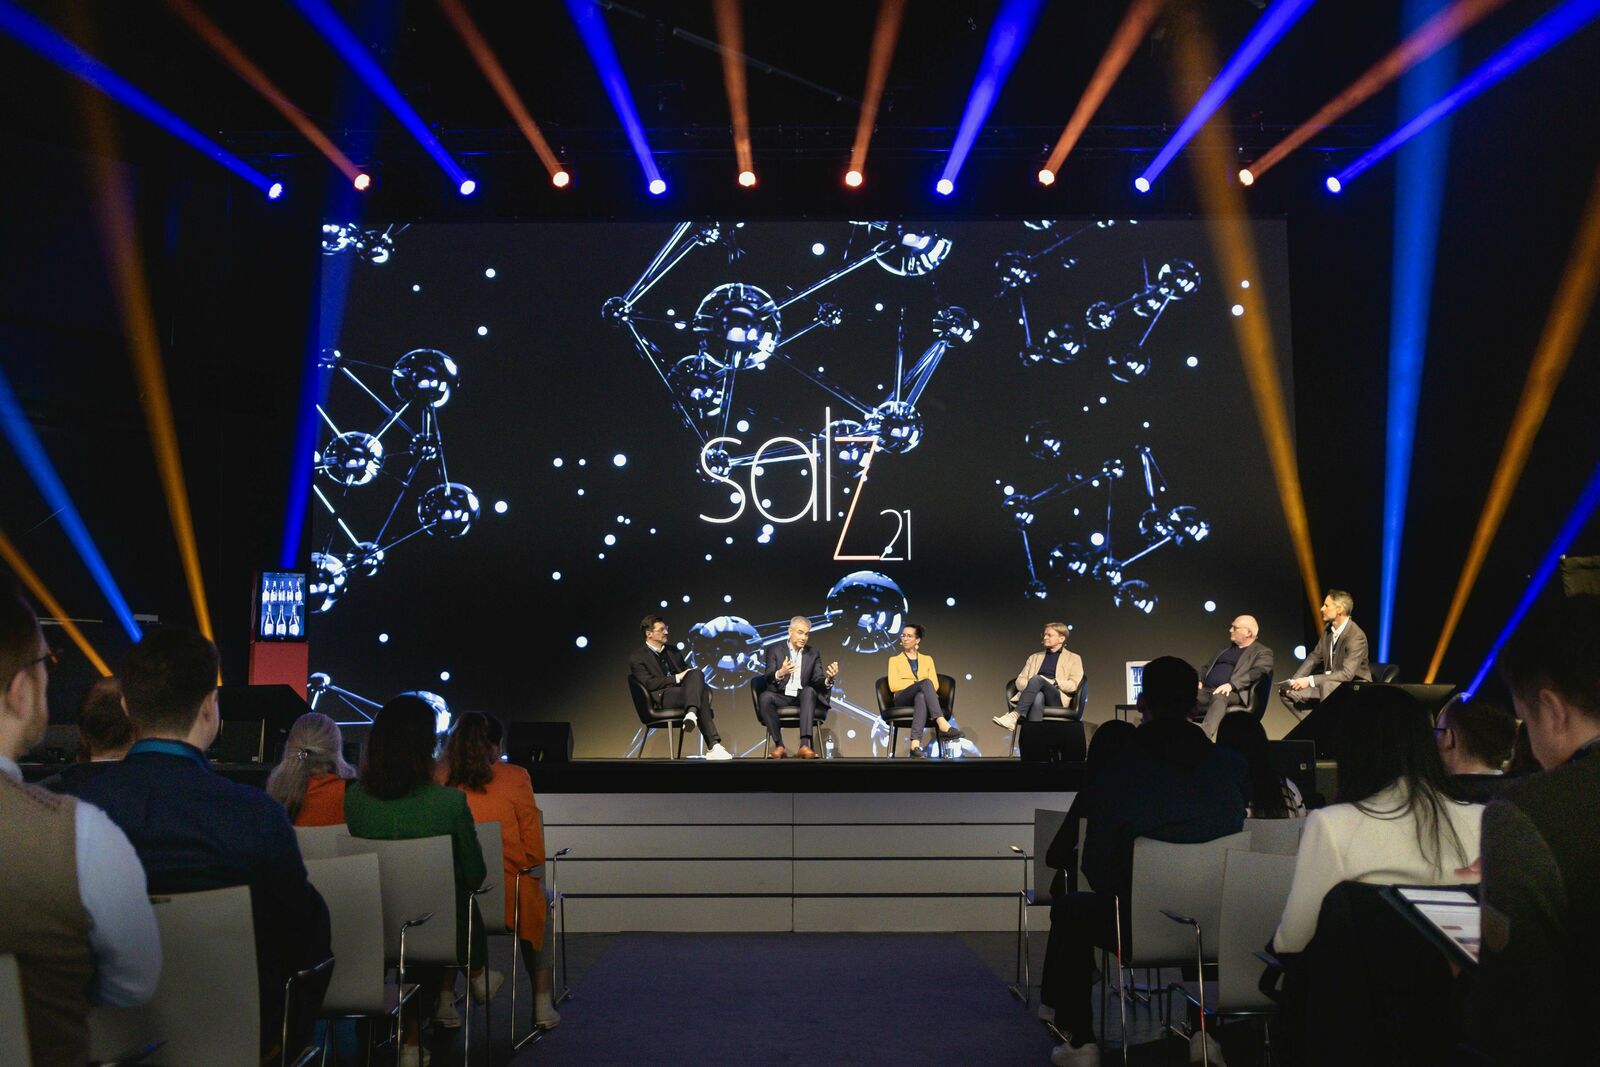 Eine Konferenzszene mit sechs Personen auf einer Bühne, vor einem großen Bildschirm mit dem Wort "SALT" und der Zahl "21", umgeben von Sternbildgrafiken.